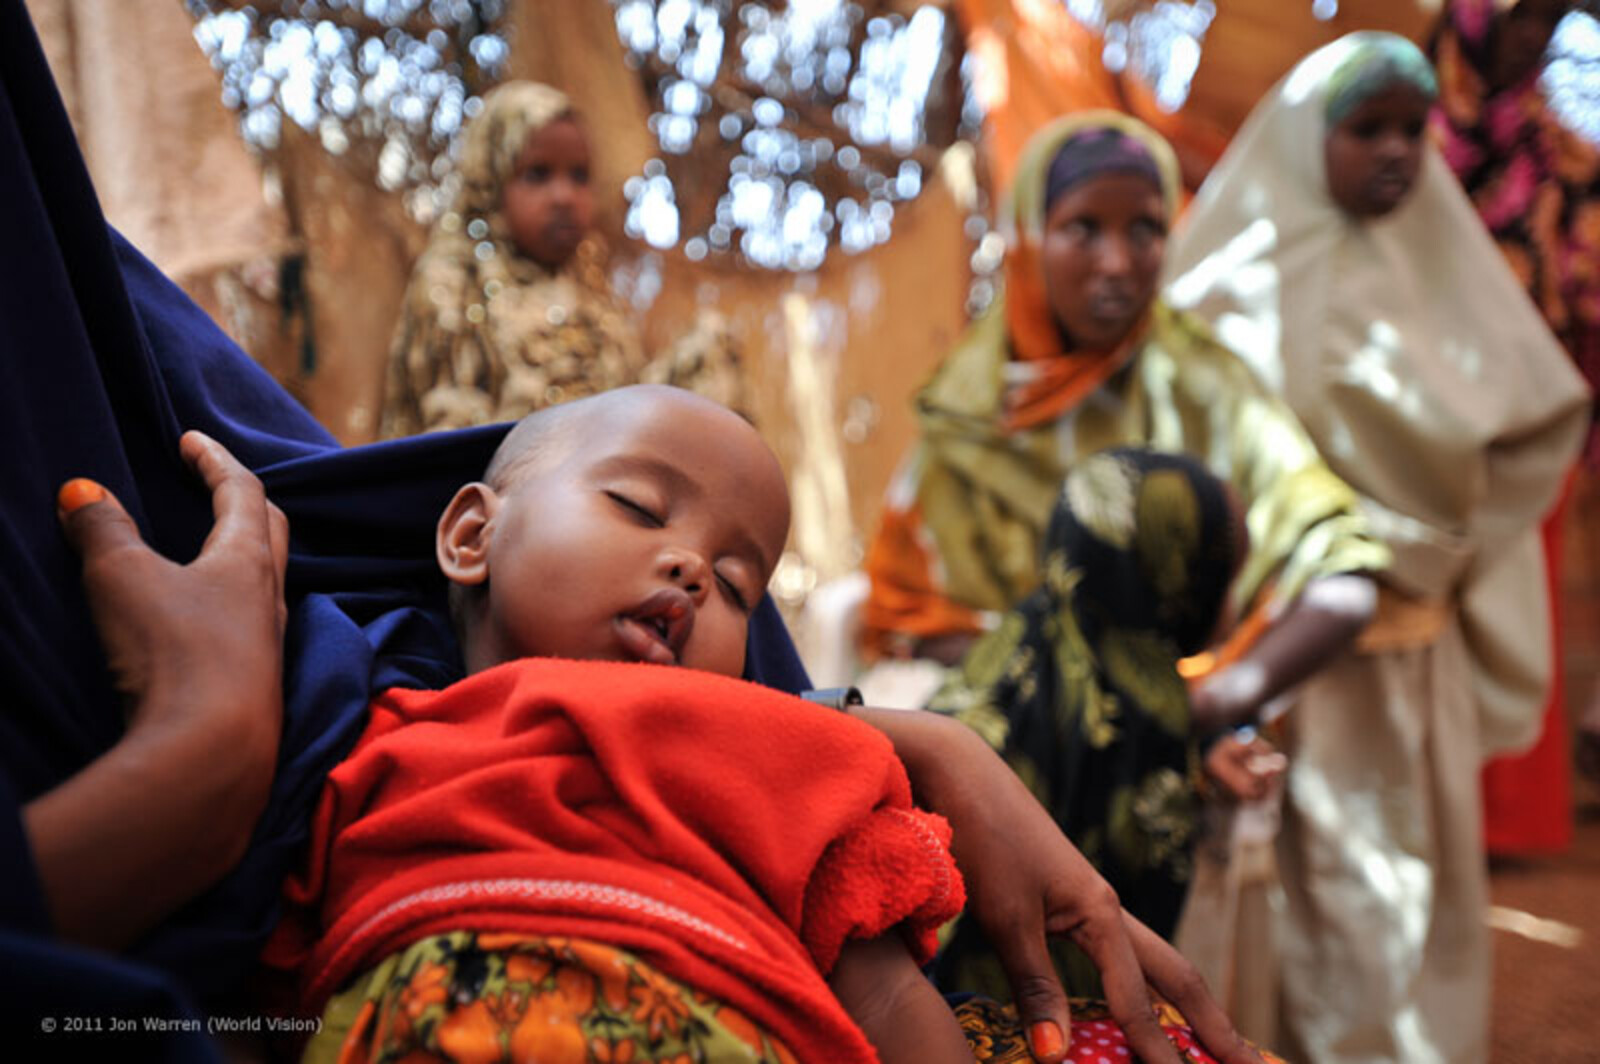 Mit seinen acht Monaten leidet Naimo bereits unter Tuberkulose und Unterernährung. World Vision versorgt auch ihn, führt Impfungen gegen Tuberkulose und Masern durch. Naimos Eltern haben bis auf fünf Ziegen alles verloren und sind nun arbeitslos. Ihre Zuk